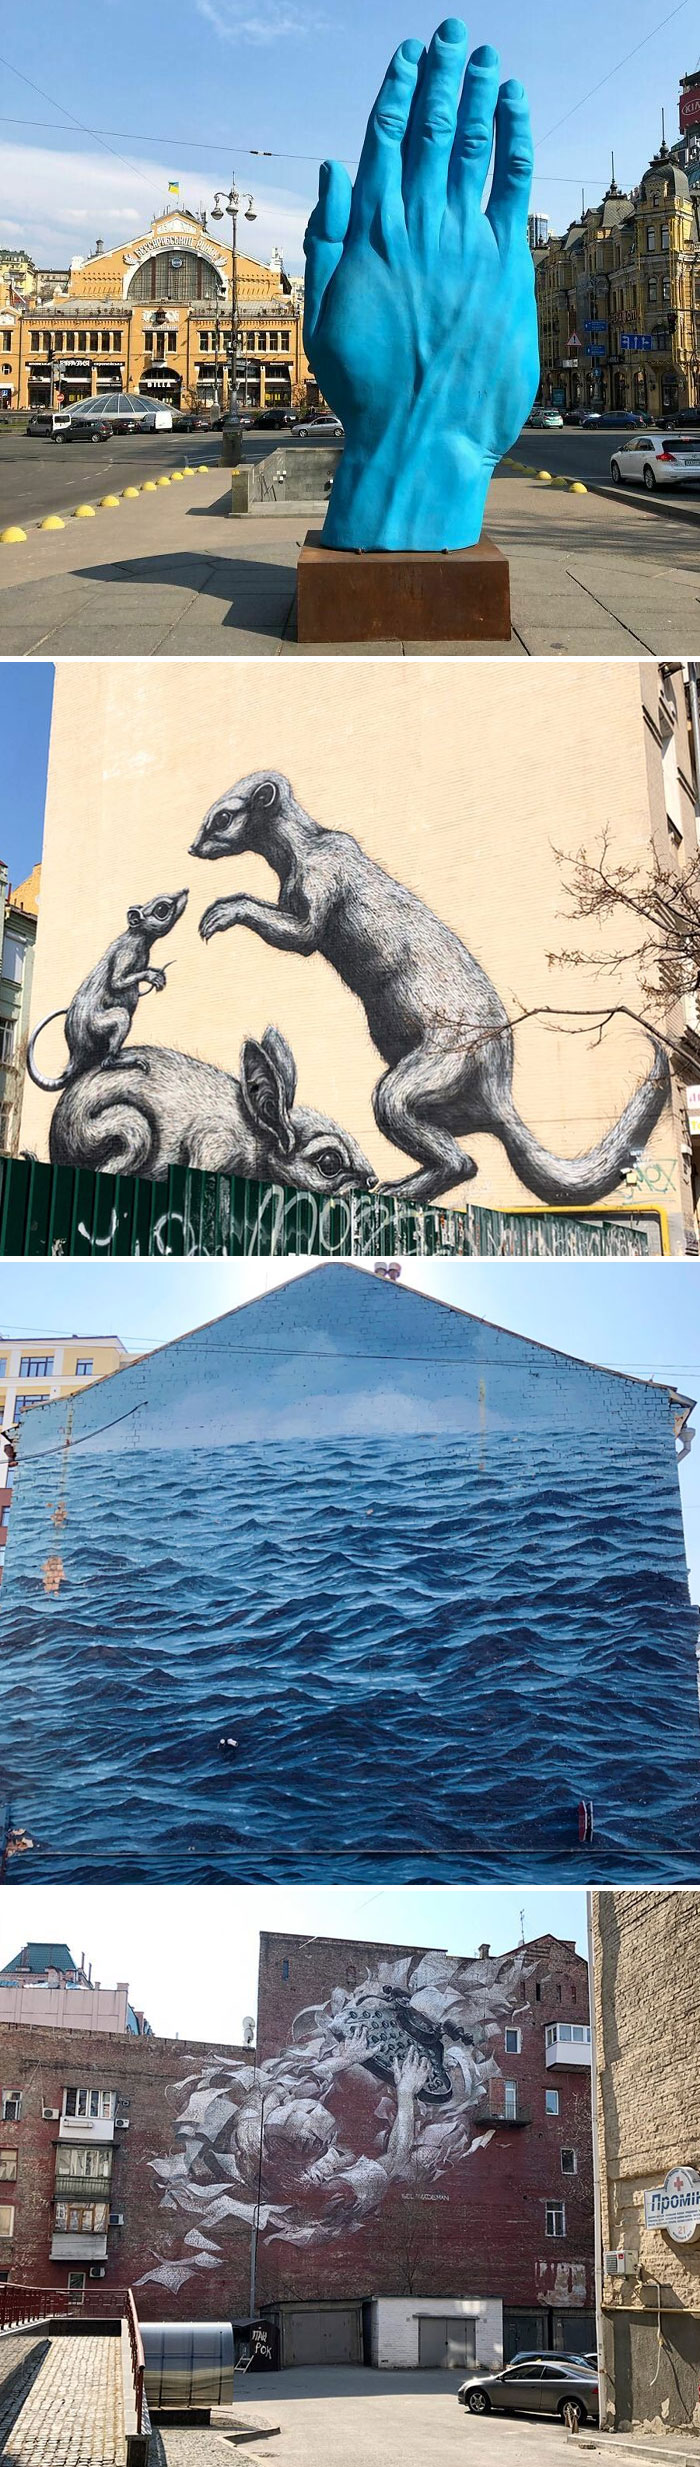 Enjoy New Kyiv Murals And Street Art